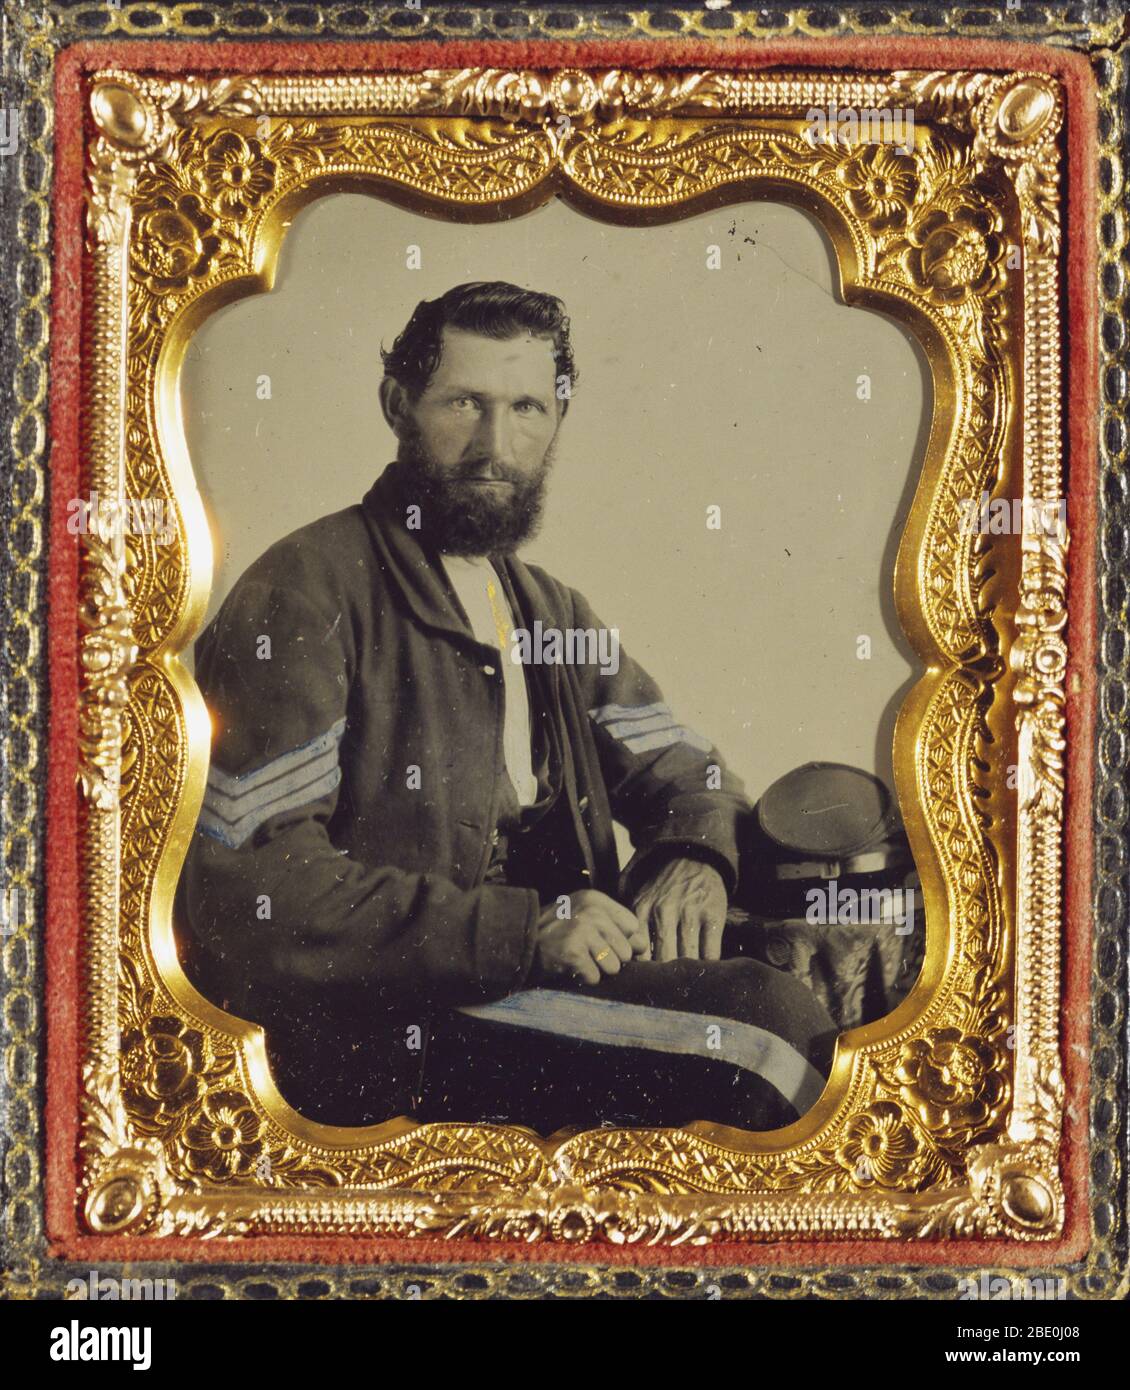 Portrait d'un soldat confédéré d'environ 1862. Ambrotype, couleur manuelle. Guerre civile américaine. Banque D'Images